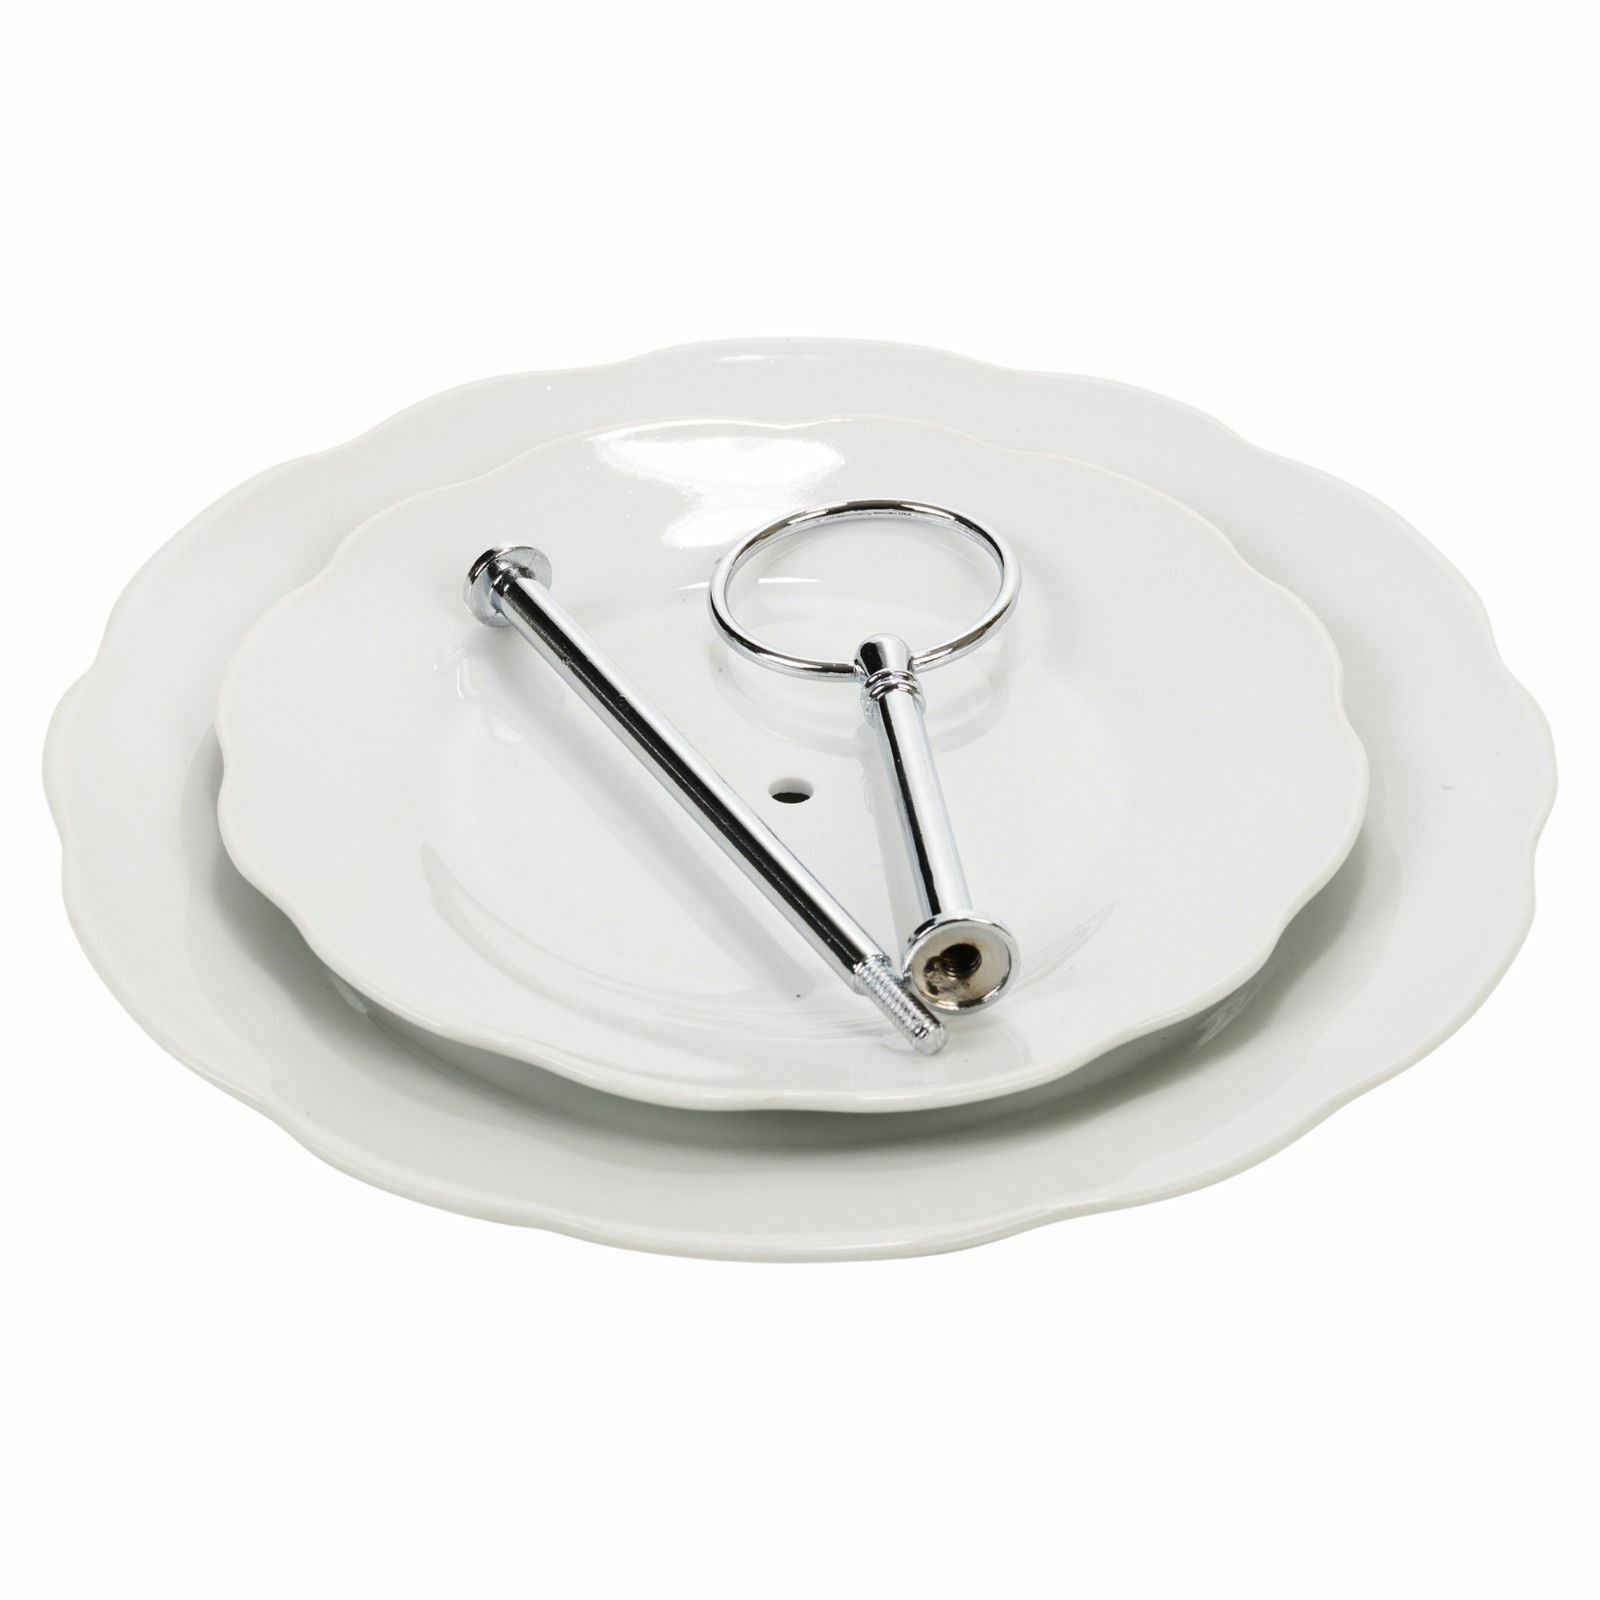 Блюдо 2-х ярусное Koopman tableware 24 см, цвет белый - фото 2